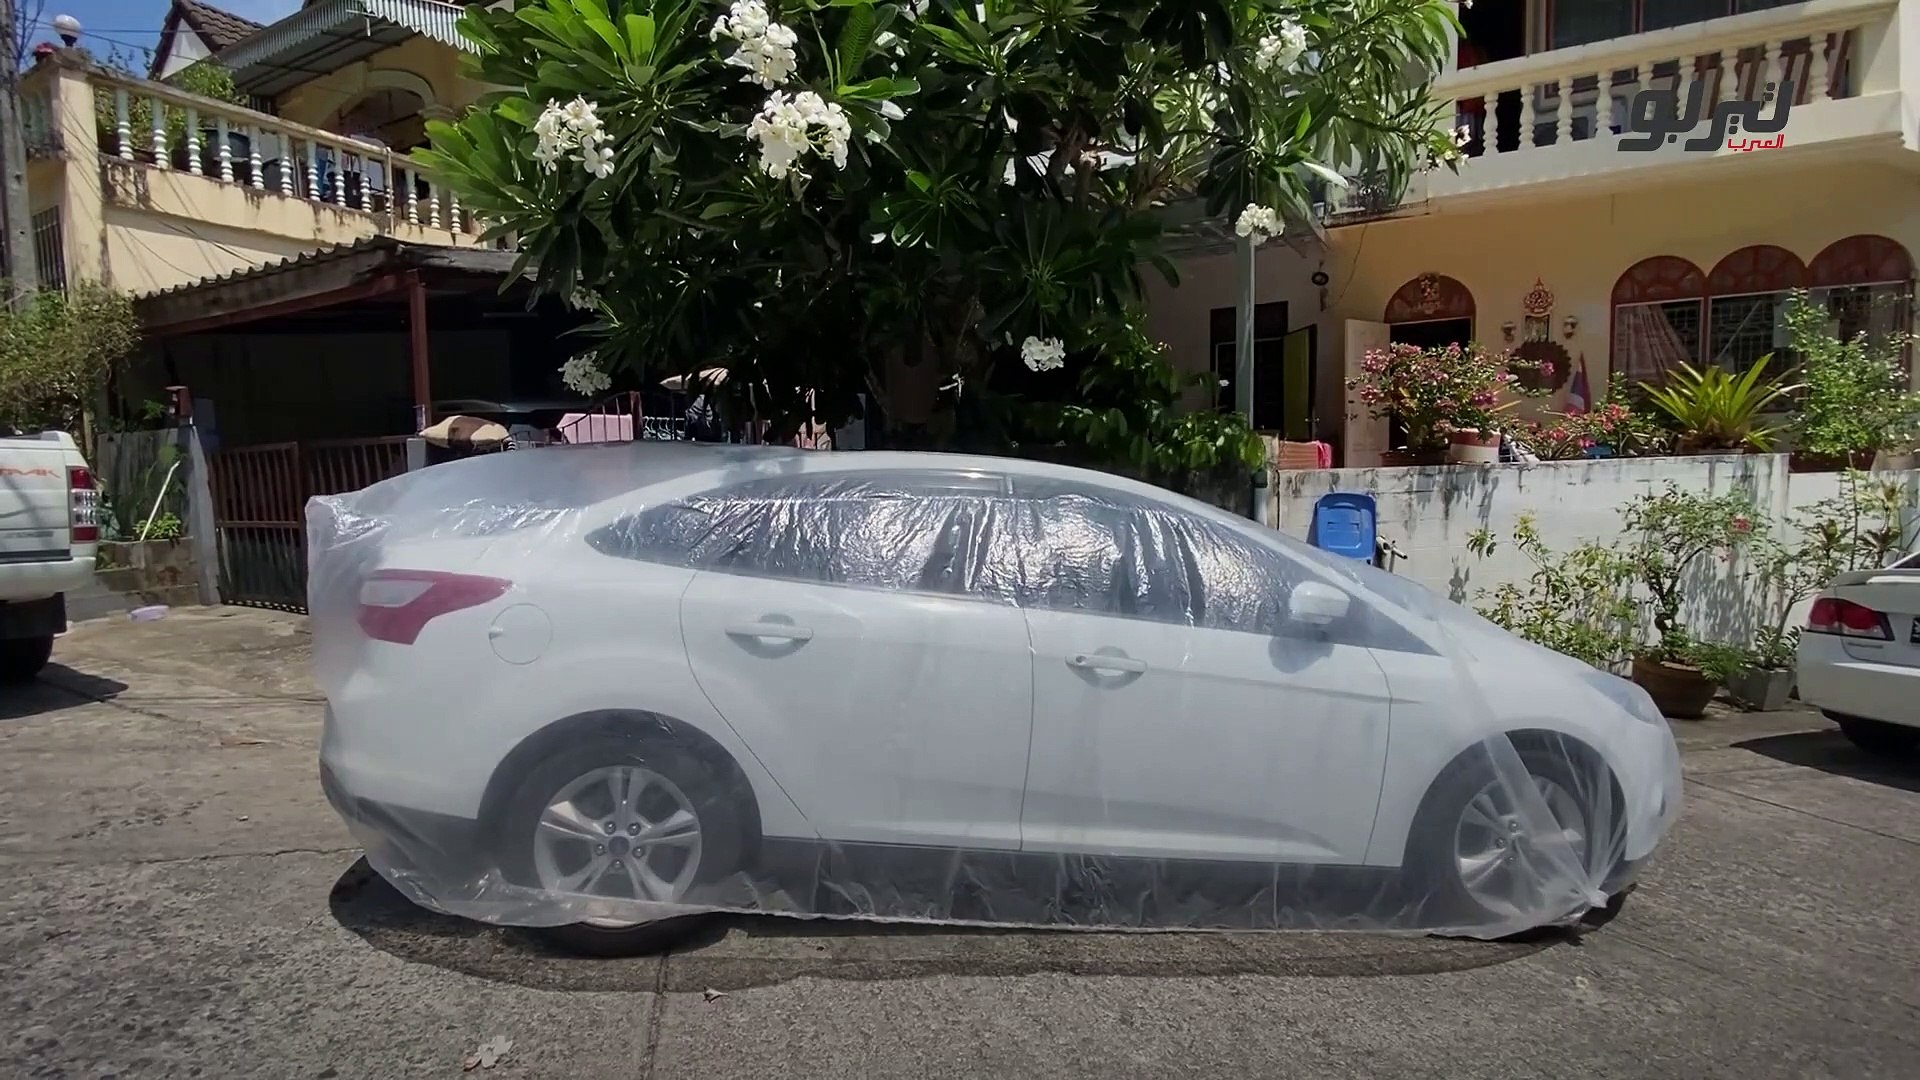 أفضل غطاء للسيارة من الشمس - فيديو Dailymotion